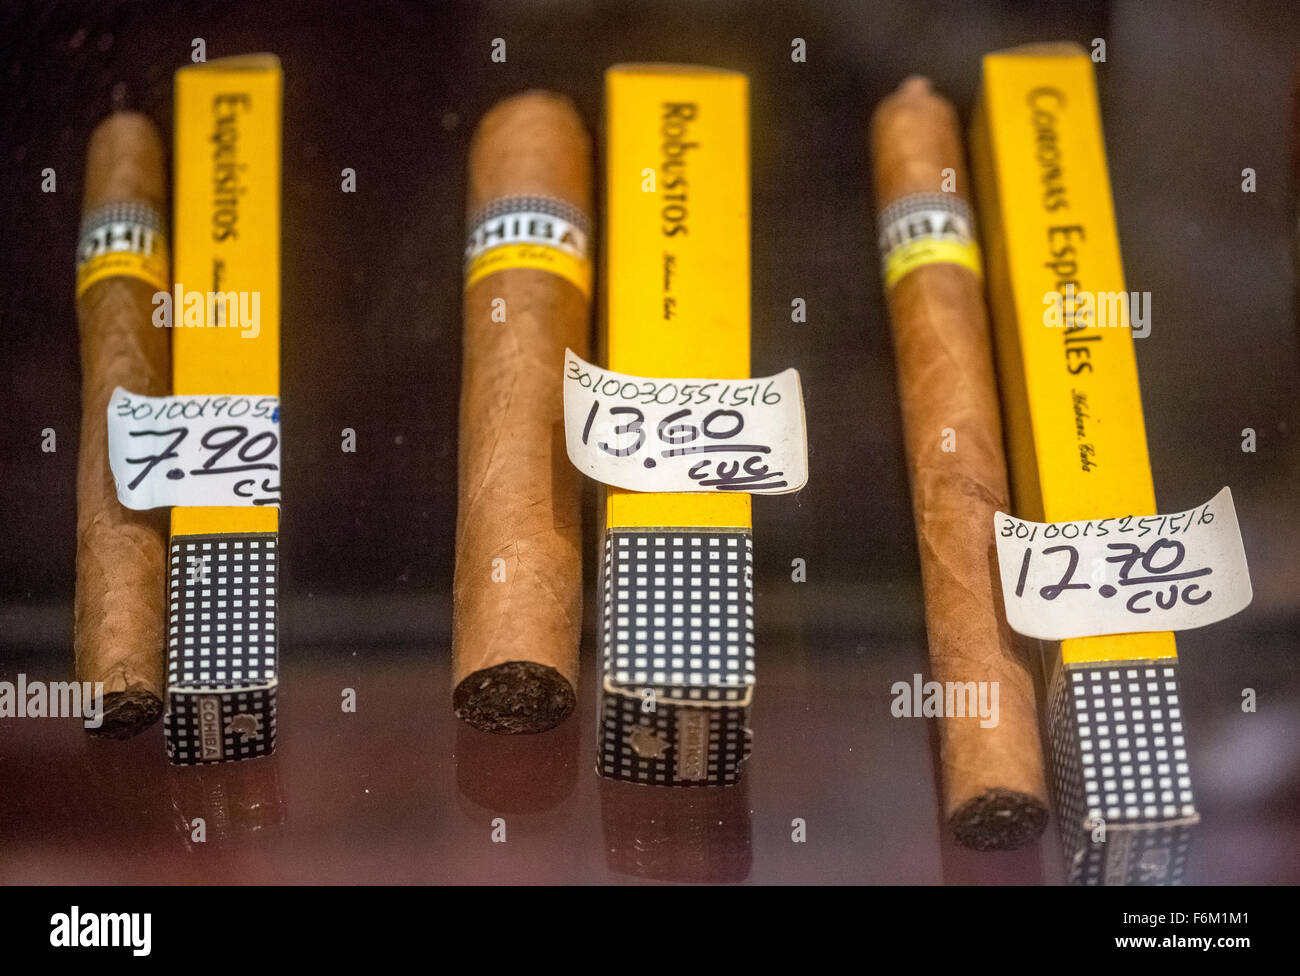 Cohiba cigares dans le commerce de détail avec des paquets, des cigares cubains dans le prix de vente d'un marchand de cigares, de souvenirs dans un cigare cubain Banque D'Images